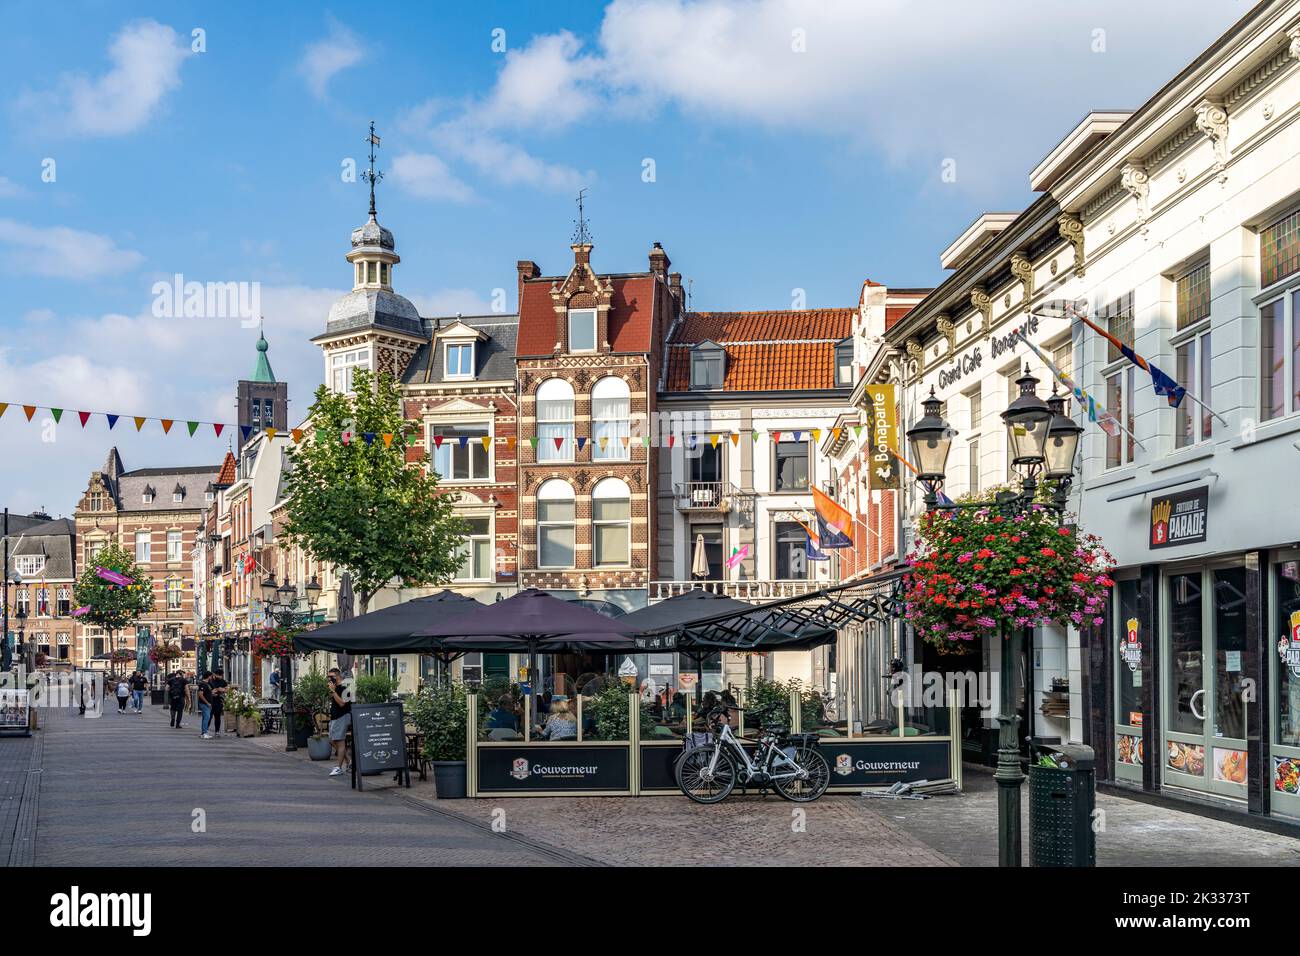 In der Altstadt in Venlo, Niederlande  |  The old town of Venlo, Netherlands Stock Photo